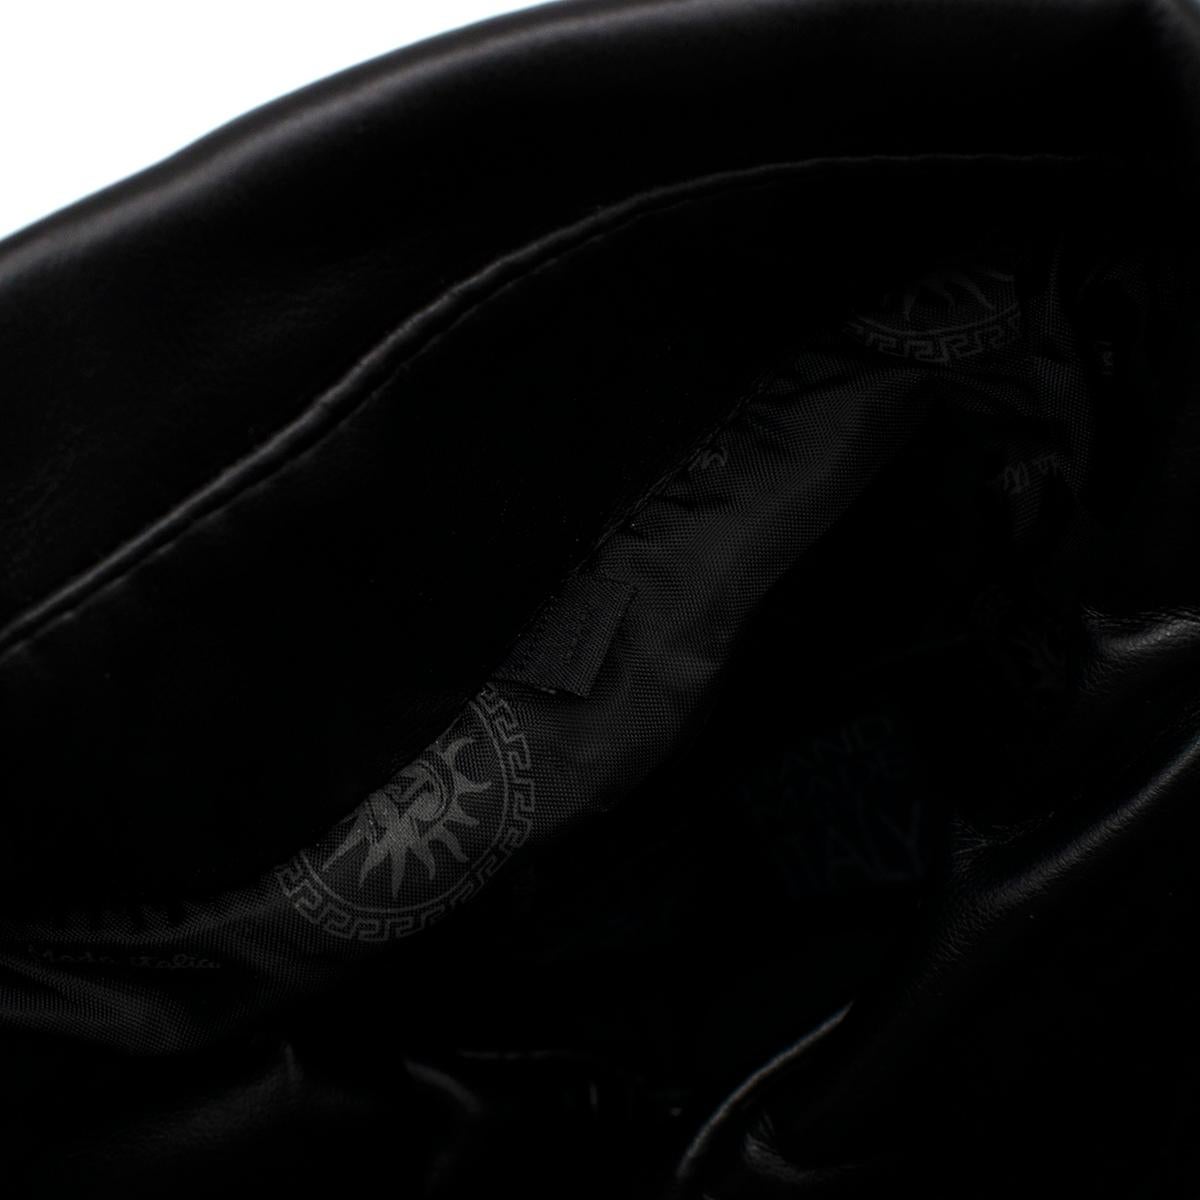 Black Gianni Versace Vintage Leather Biker Jacket - Us size 44 For Sale